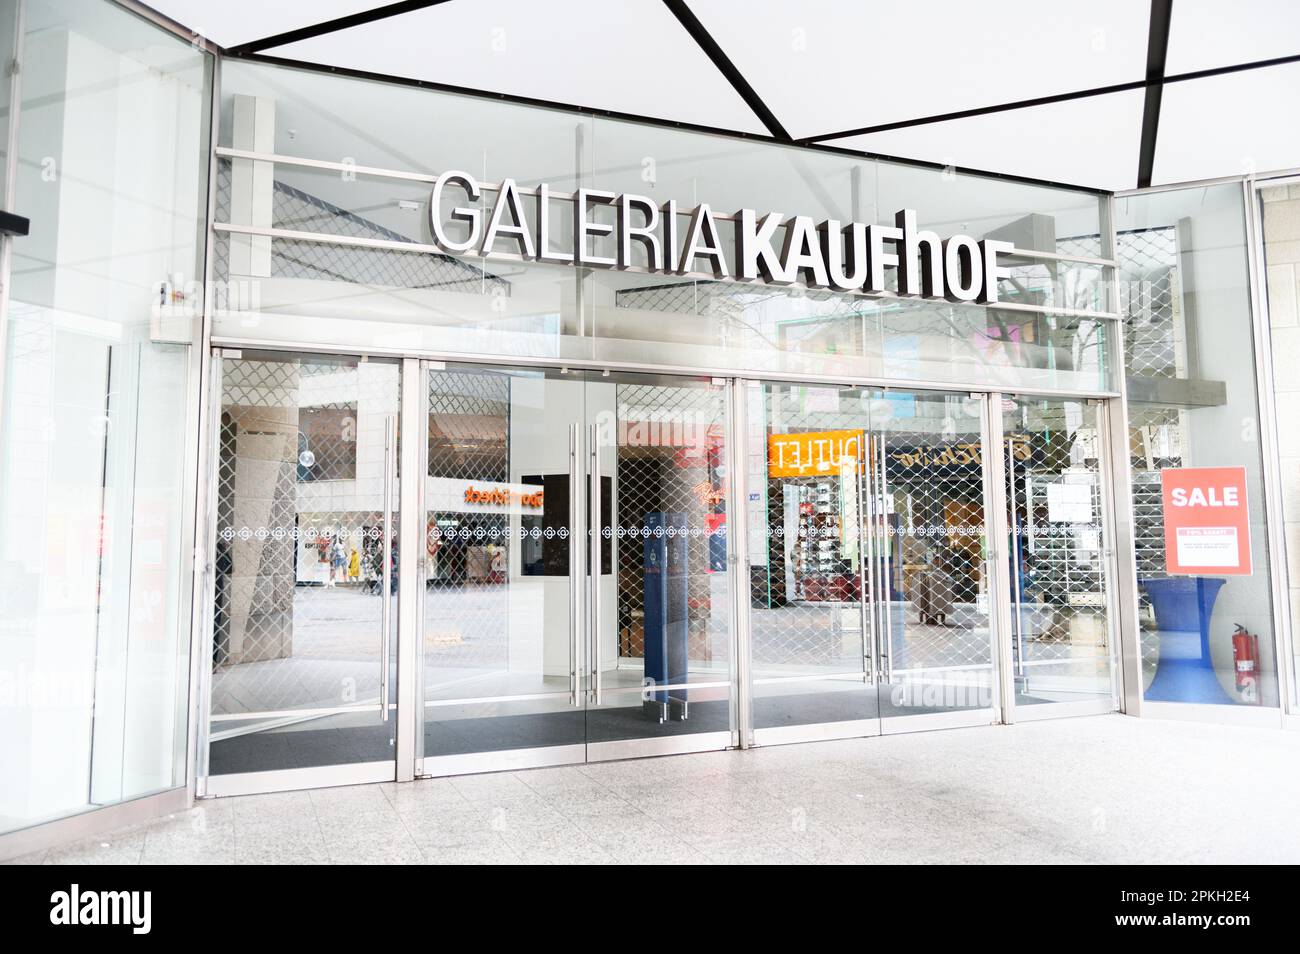 Colonia, Germania 02 2023 aprile: Porte d'ingresso chiuse del grande magazzino galeria kaufhof a colonia Foto Stock